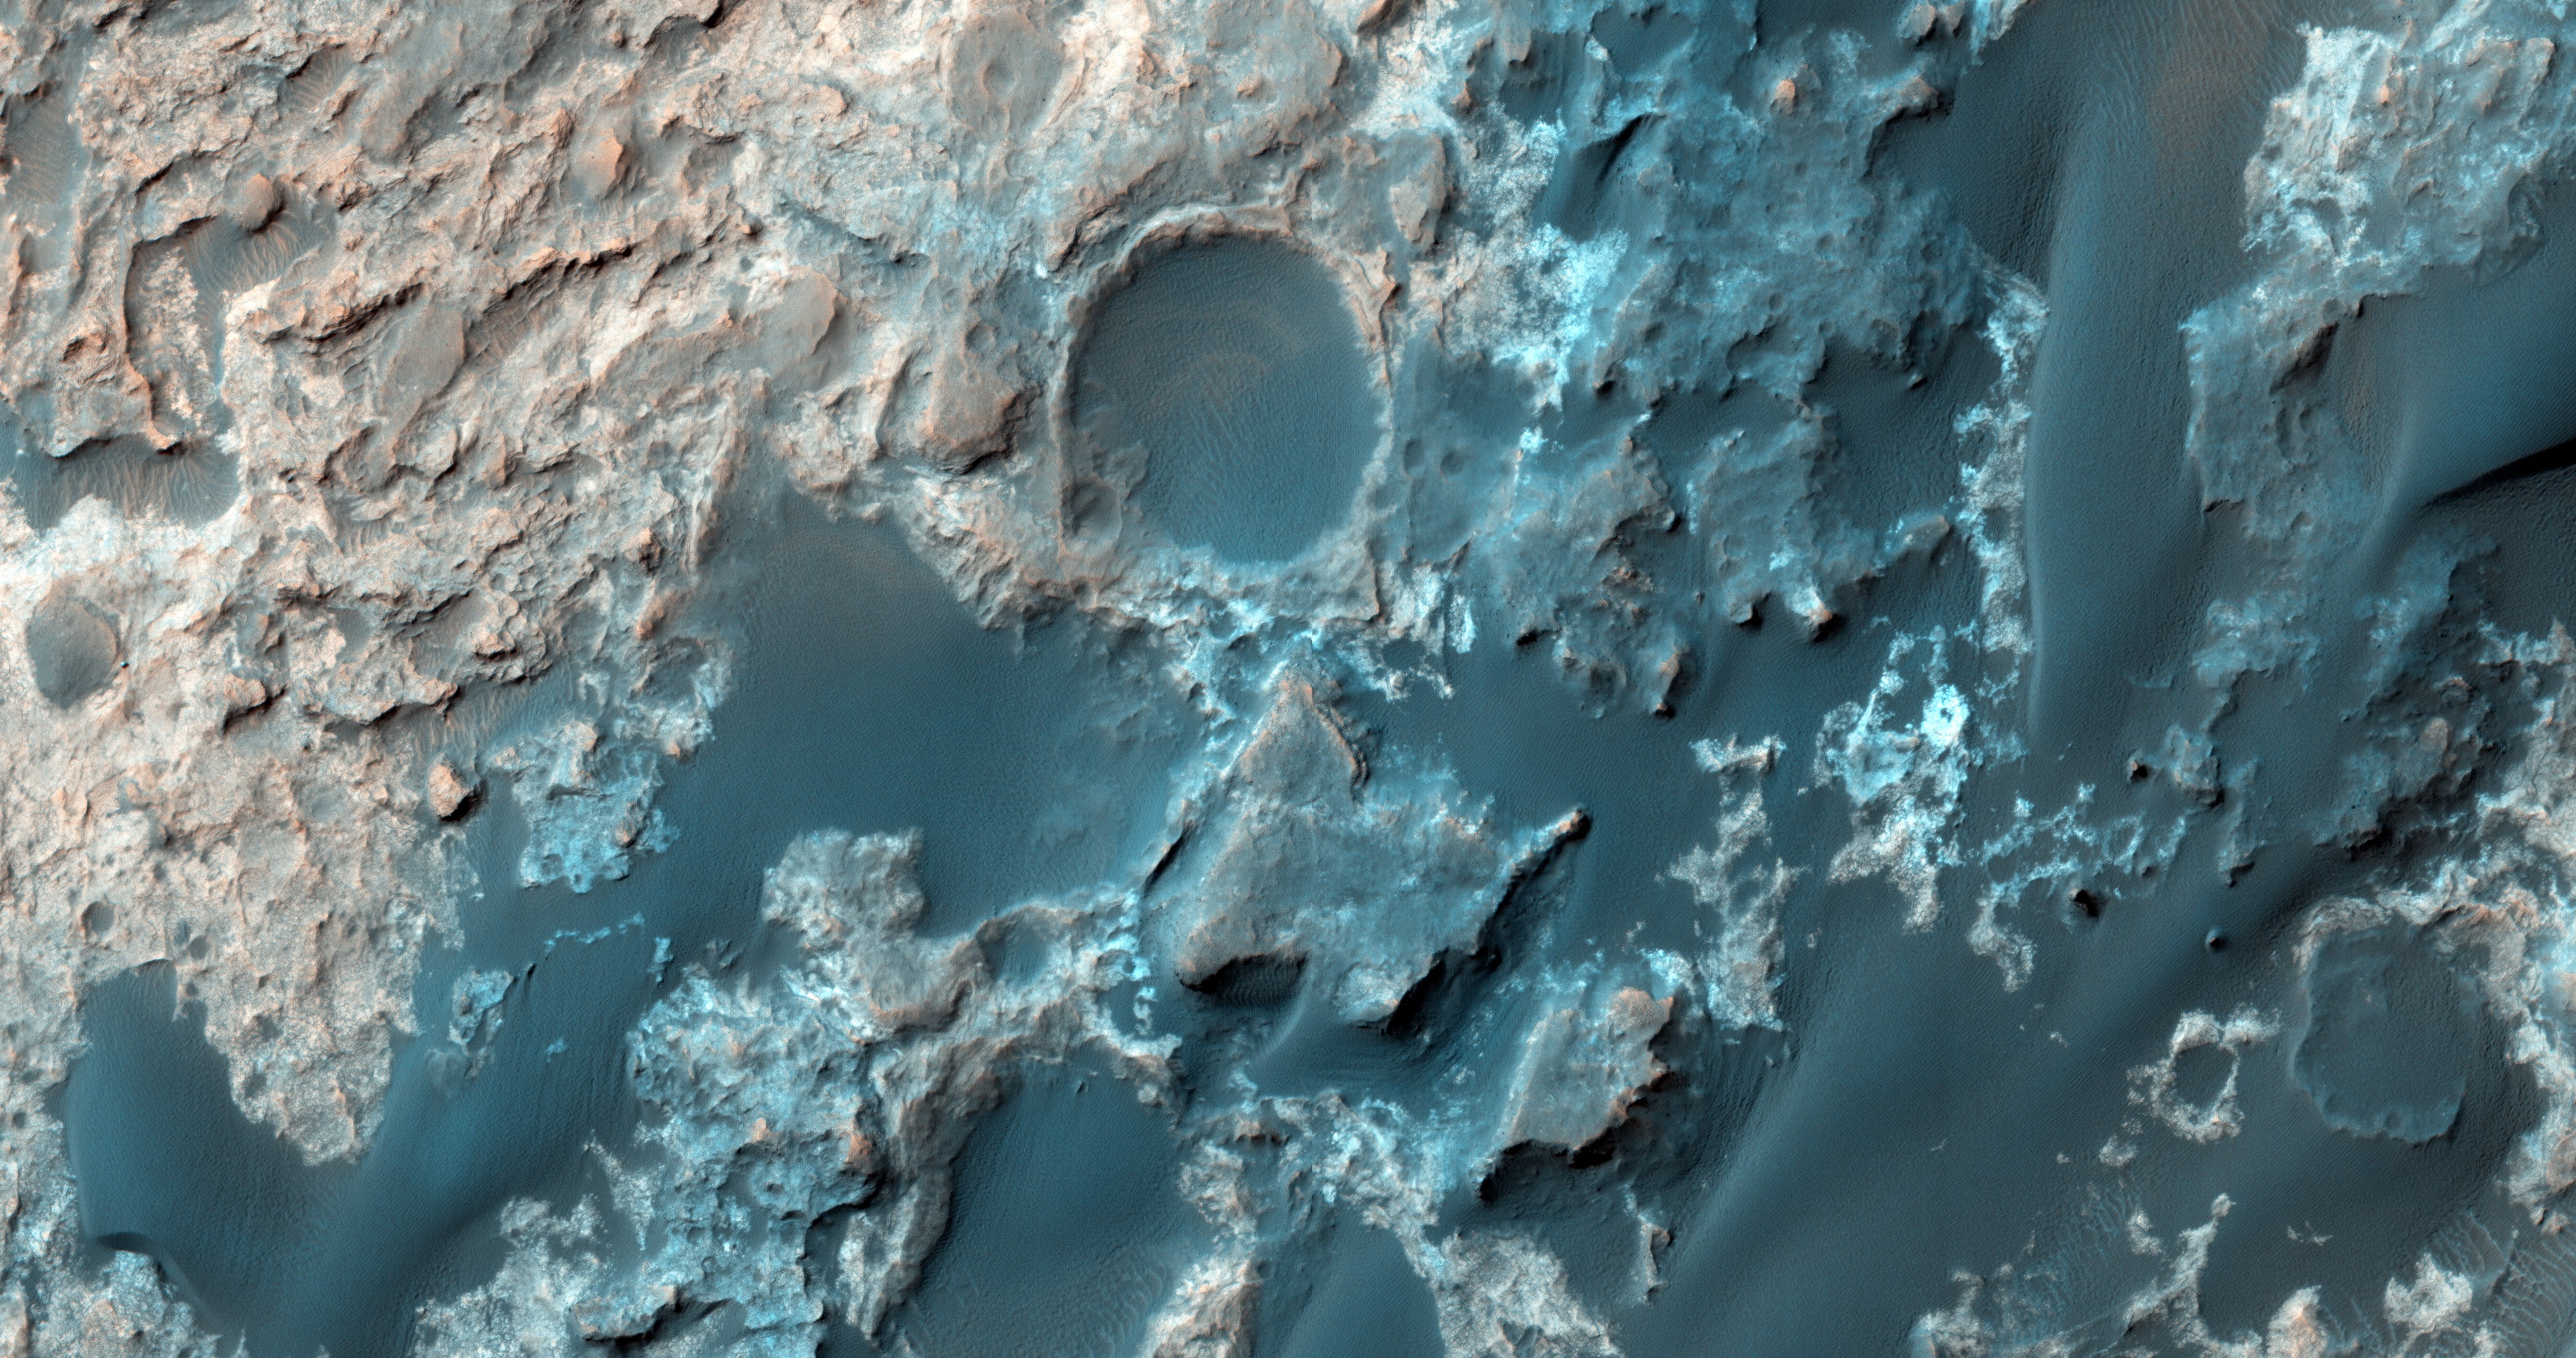 A Mars Reconnaissance Orbiter nevű űrszonda képe a Curiosity 2015. szeptemeri útjáról, amely során két különböző sziklacsoport (a világosabb Murray és a sötétebb Stimson egységek) közötti határt vizsgálta